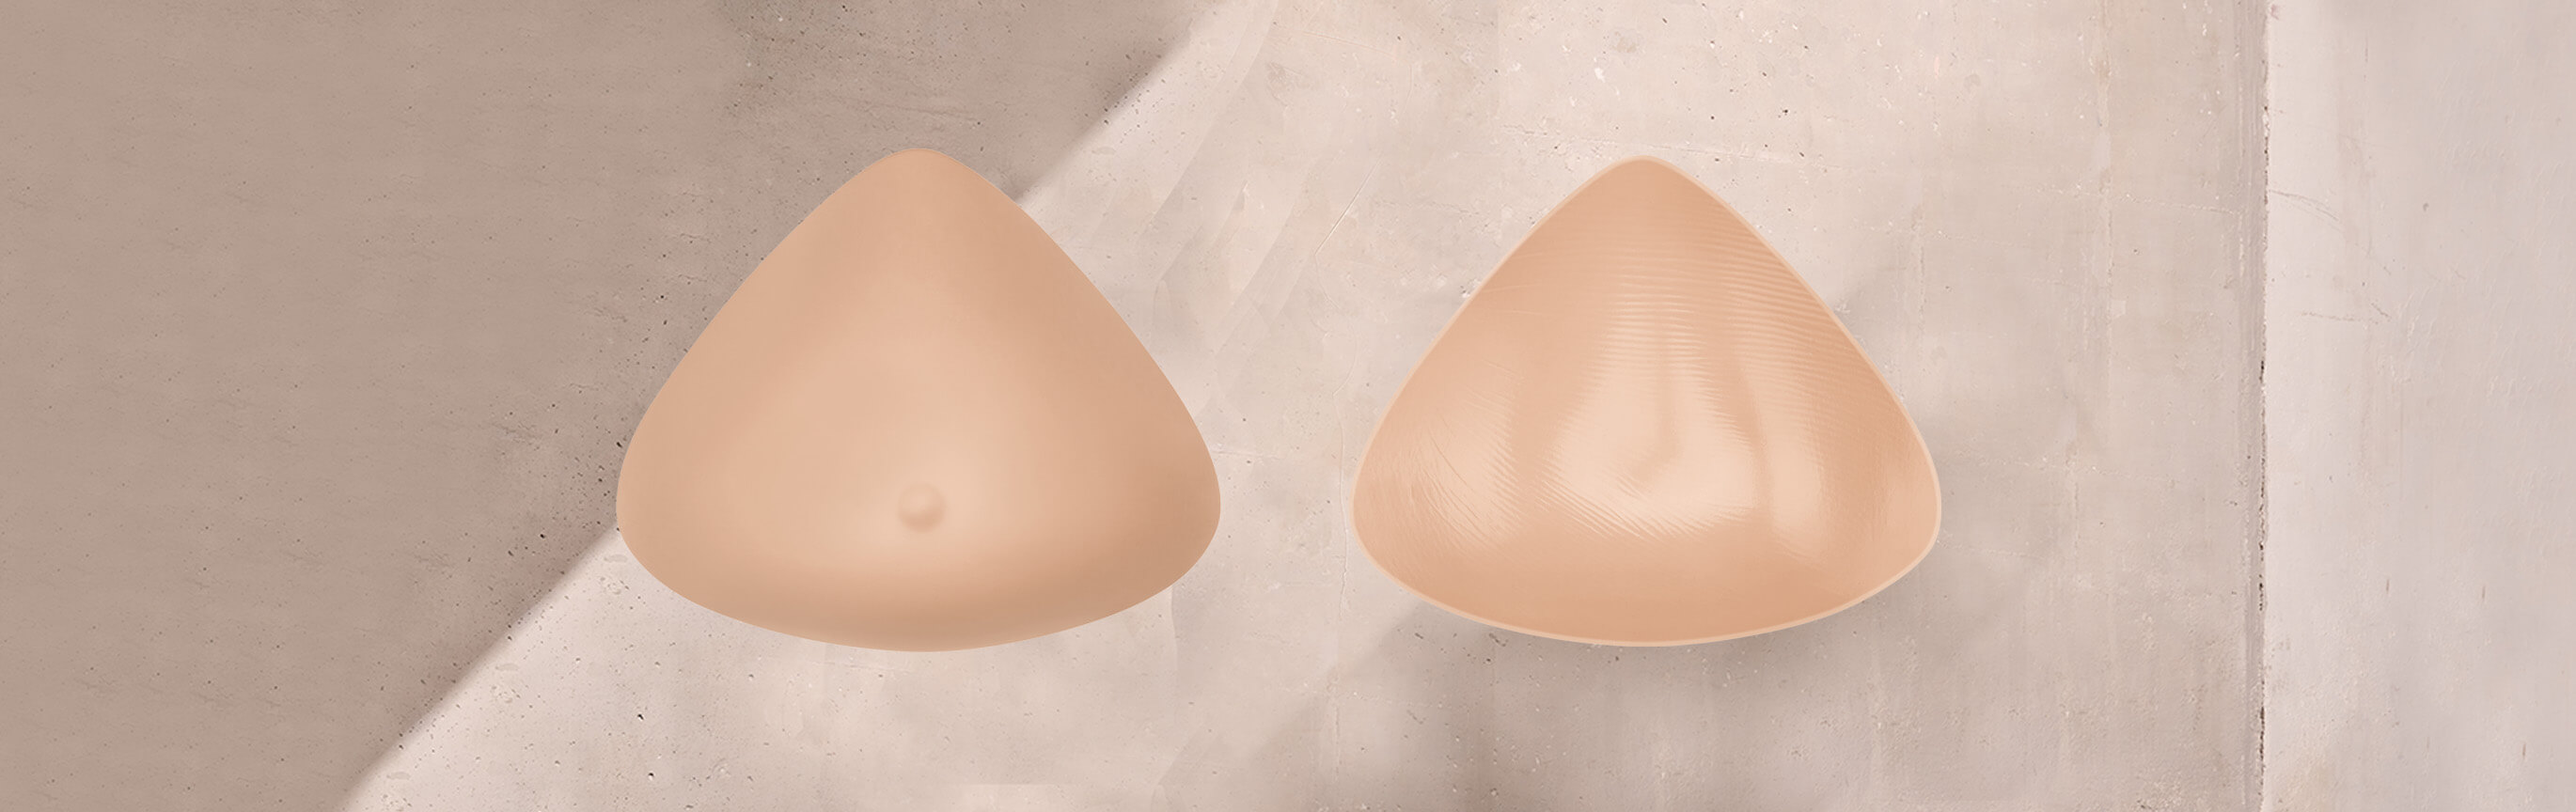 Basic Breast Form - Desktop